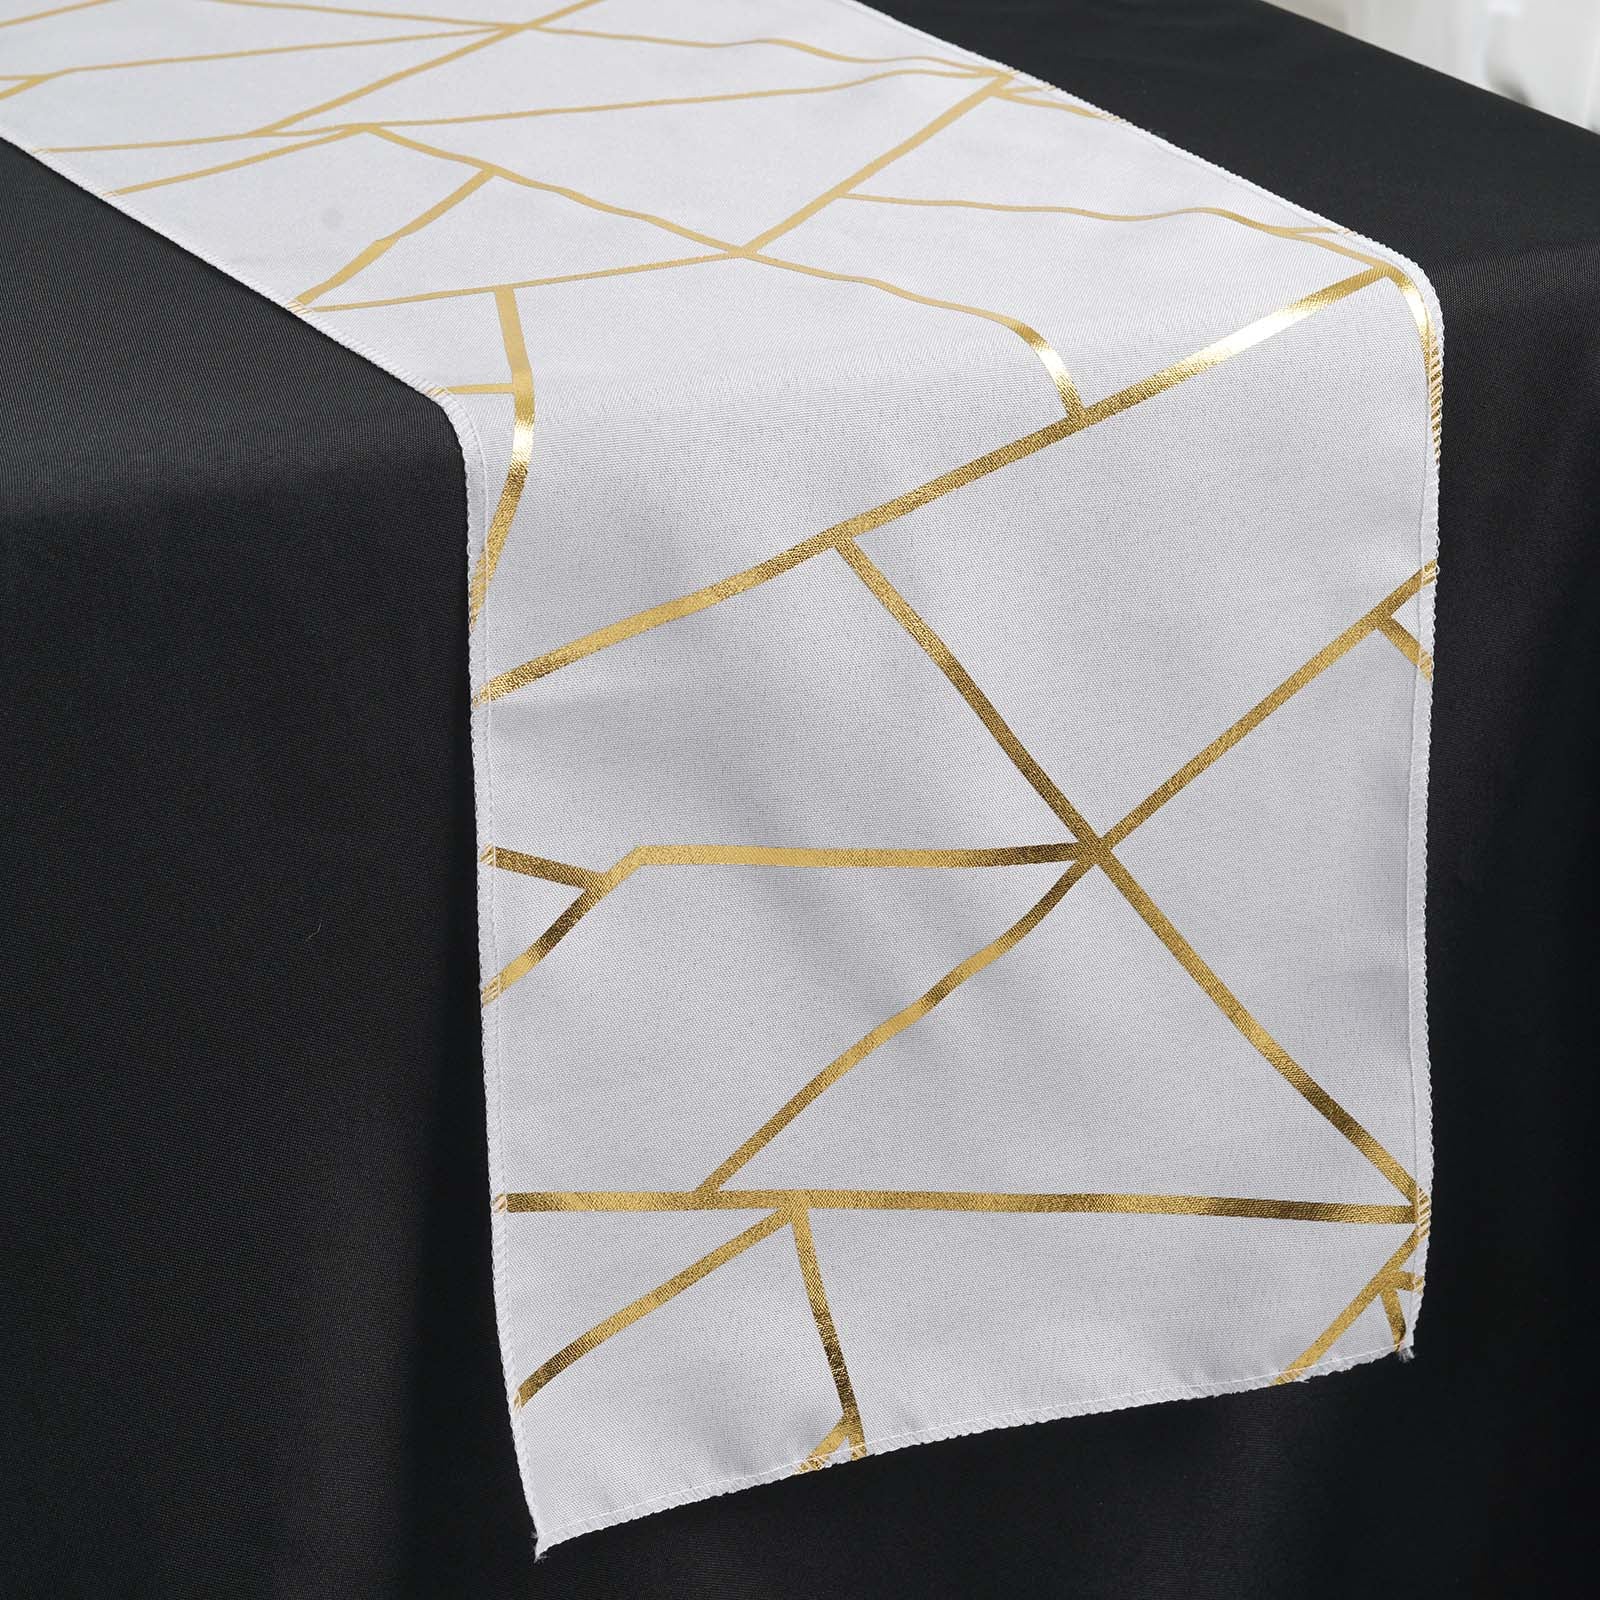 Rose Gold Glamorous Honeycomb Print Table Runner, Disposable Paper Table  Runner - Geometric Hexagon Design 9ft